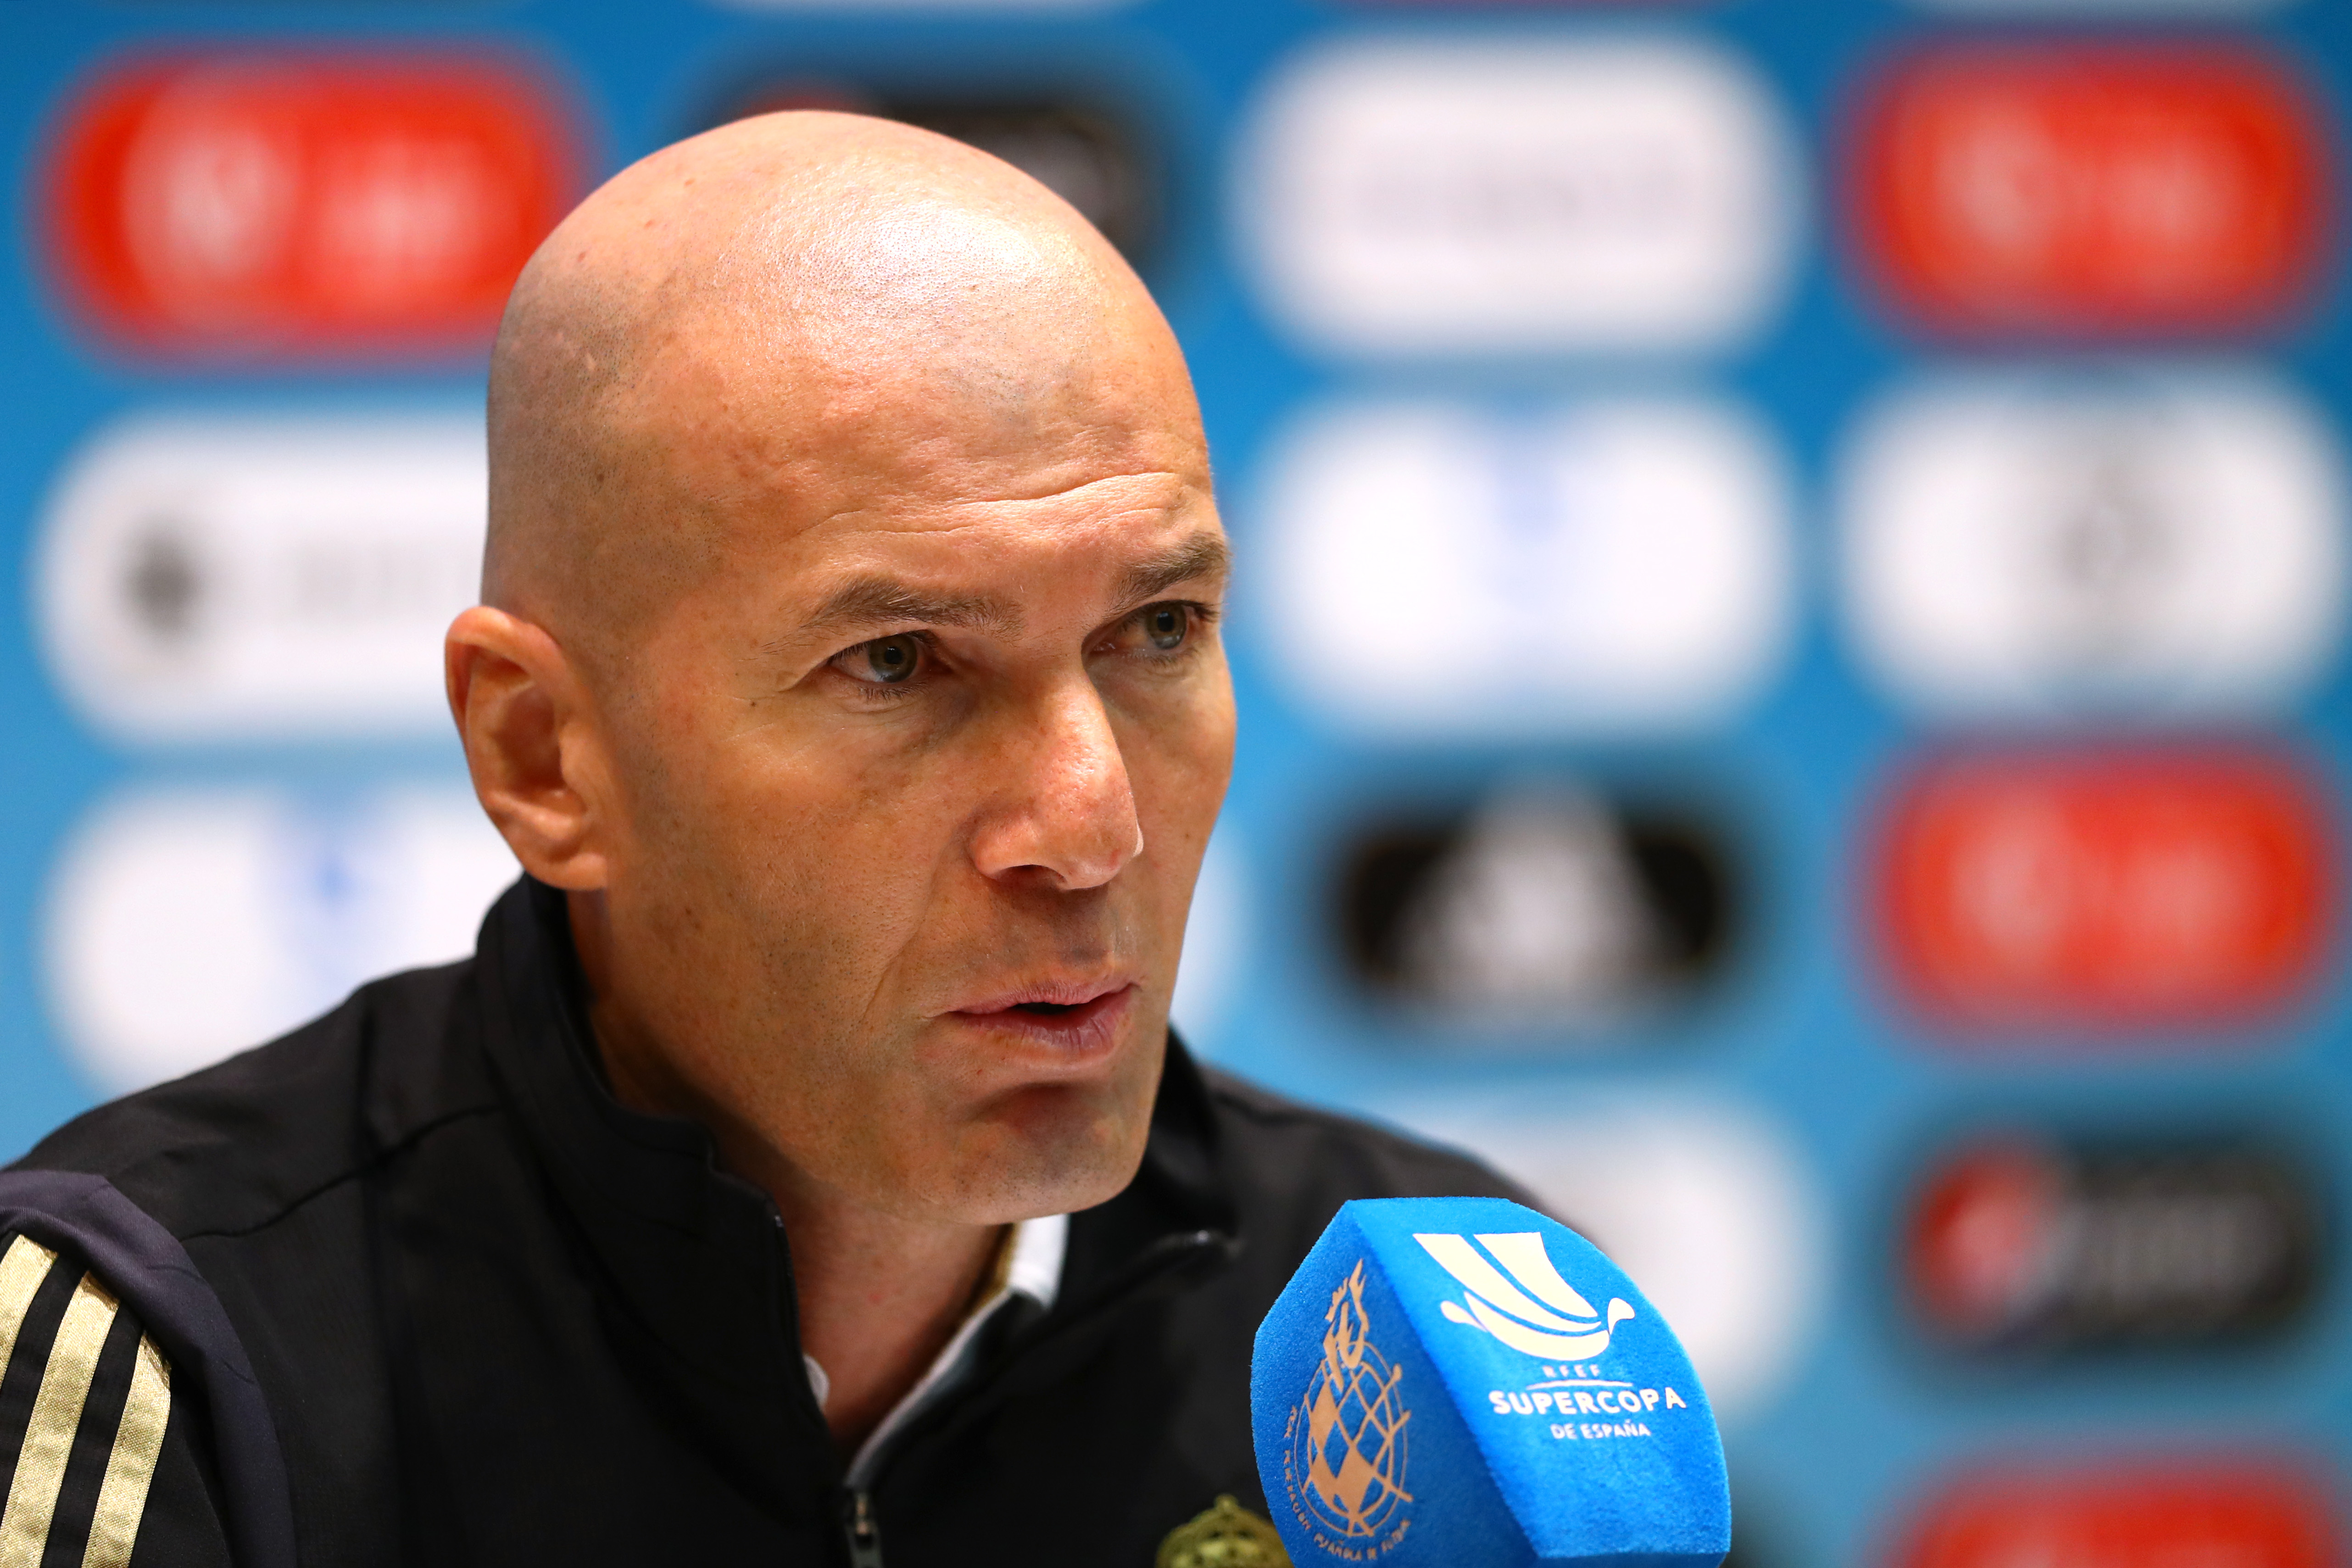 Zinedine Zidane - HQ Images x 60 (Part2)